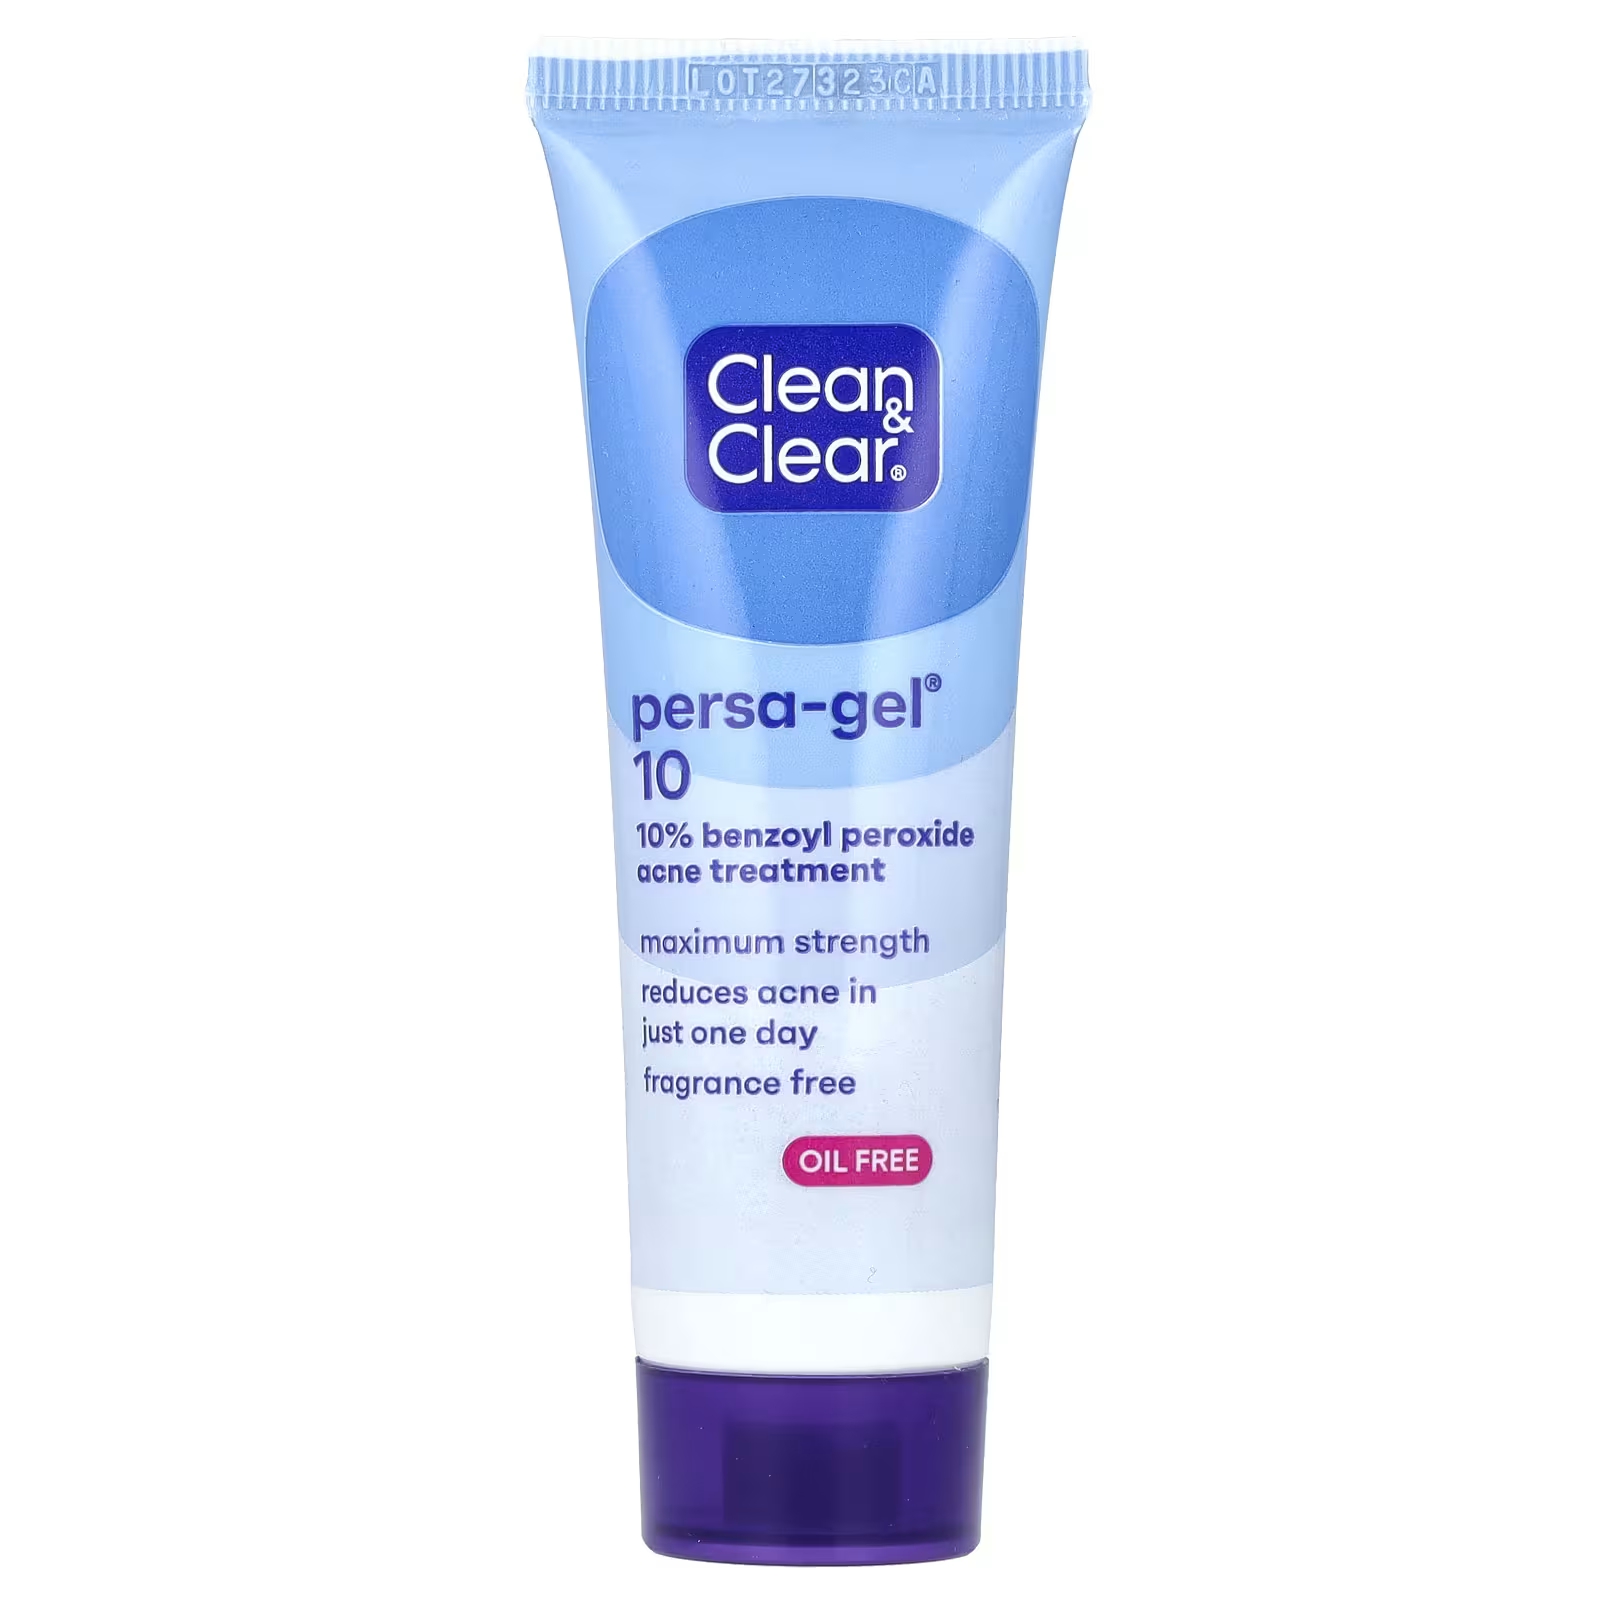 цена Clean & Clear Persa-Gel 10 максимальная сила 1 унц. (28 г)